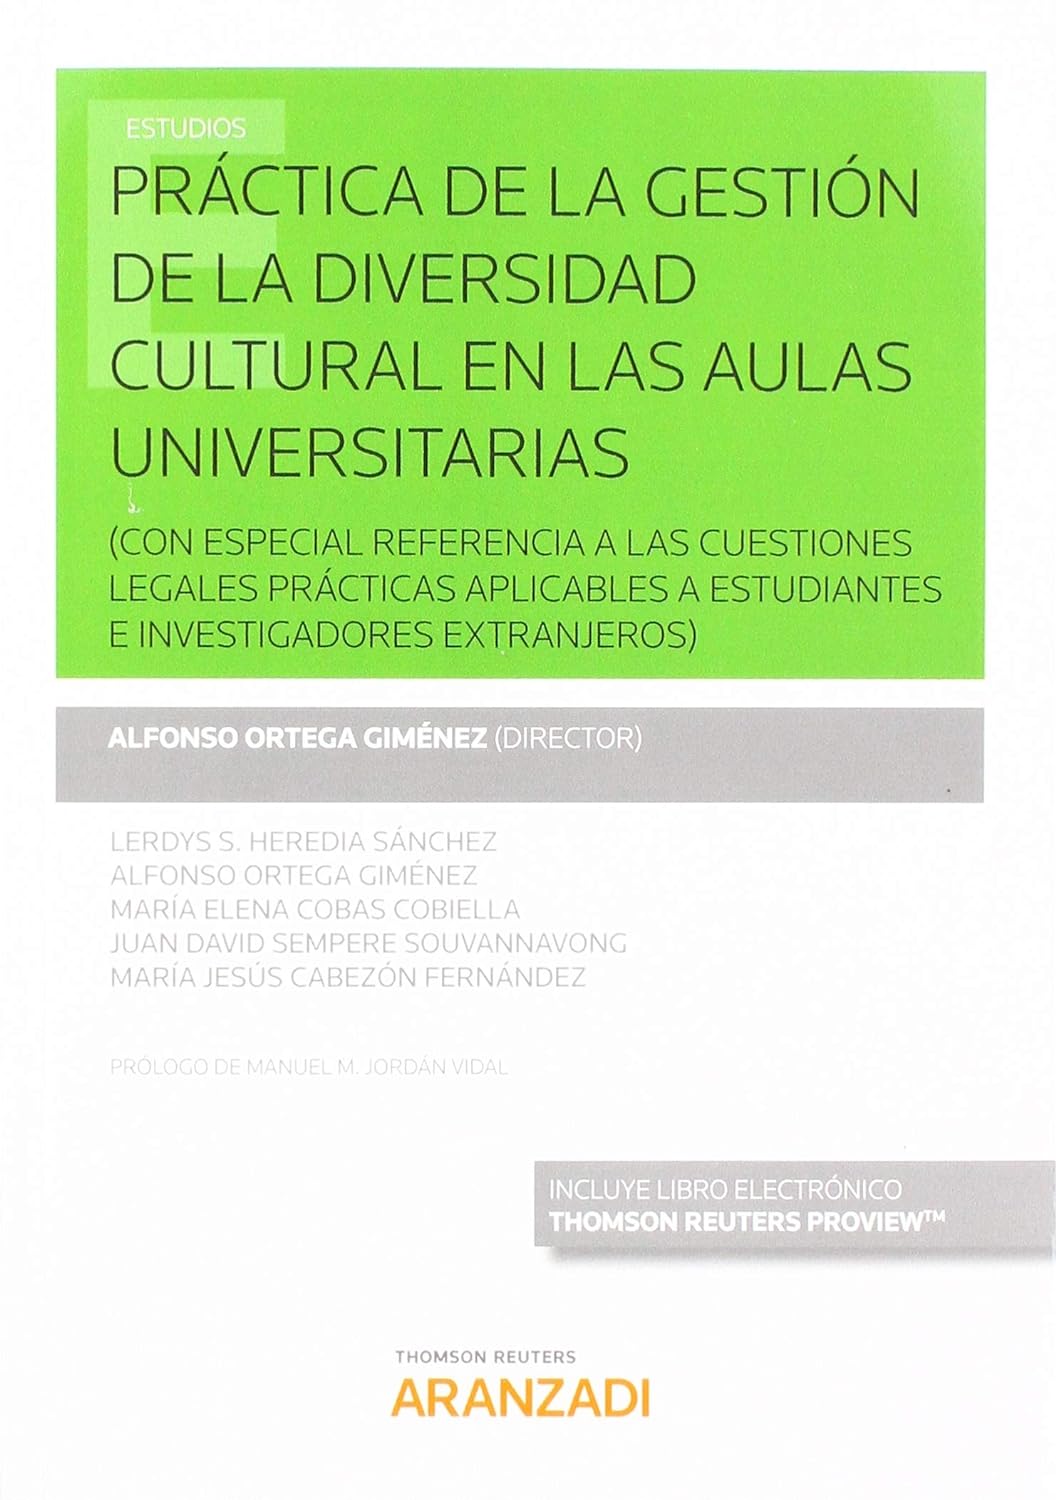 Imagen de portada del libro Práctica de la gestión de la diversidad cultural en las aulas universitarias